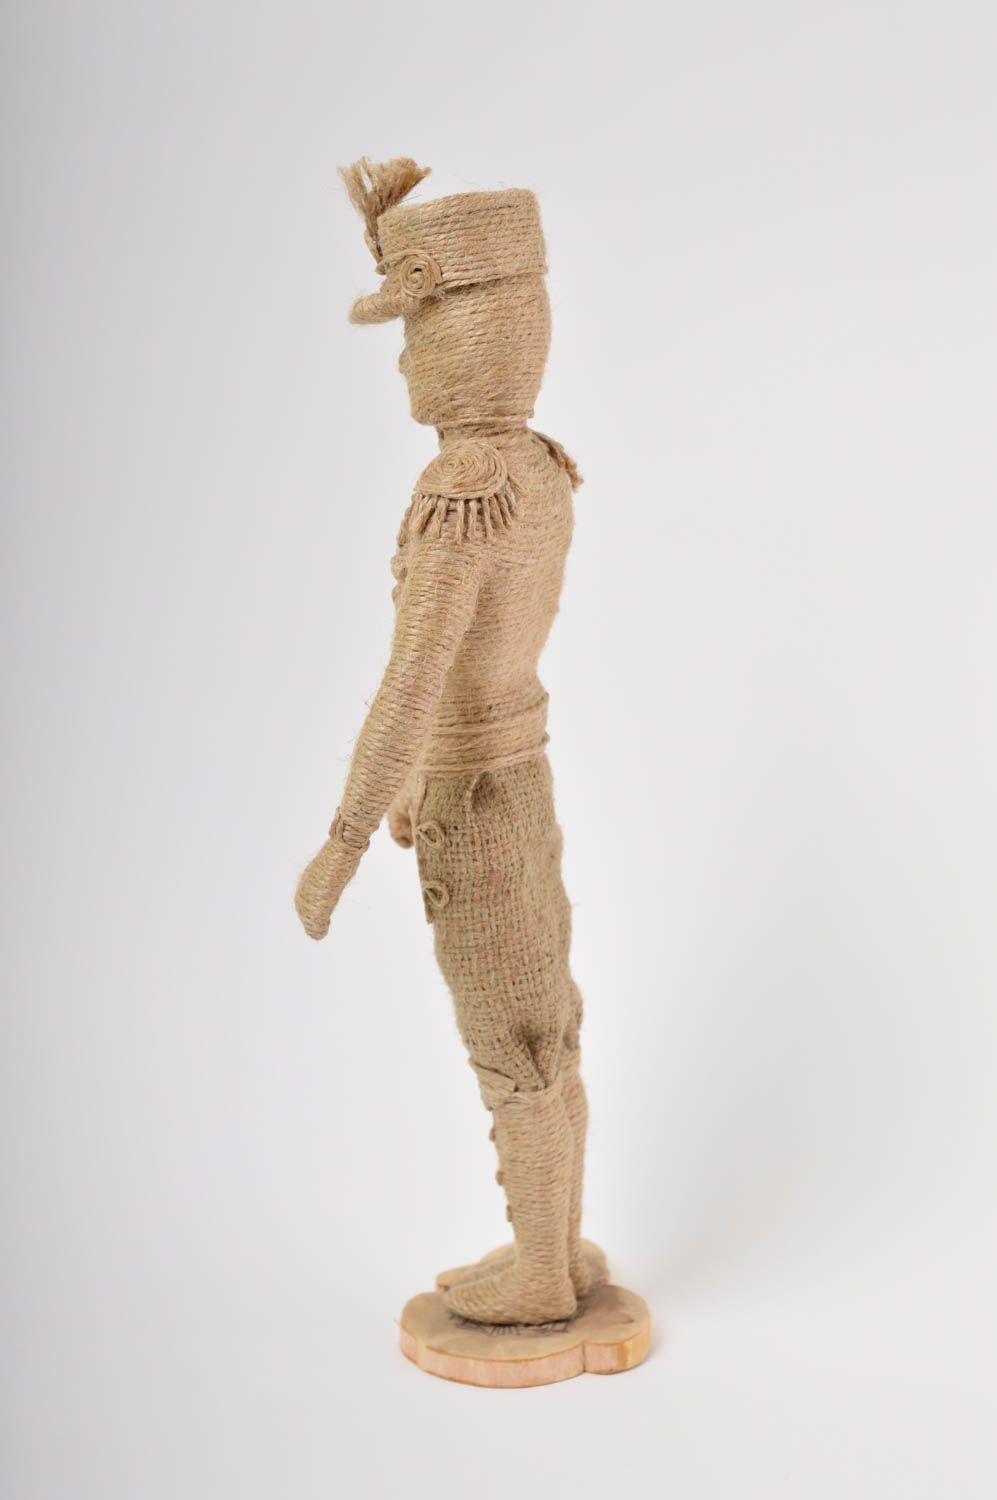 Figura original hecha a mano de yute muñeco artesanal objeto decorativo foto 4